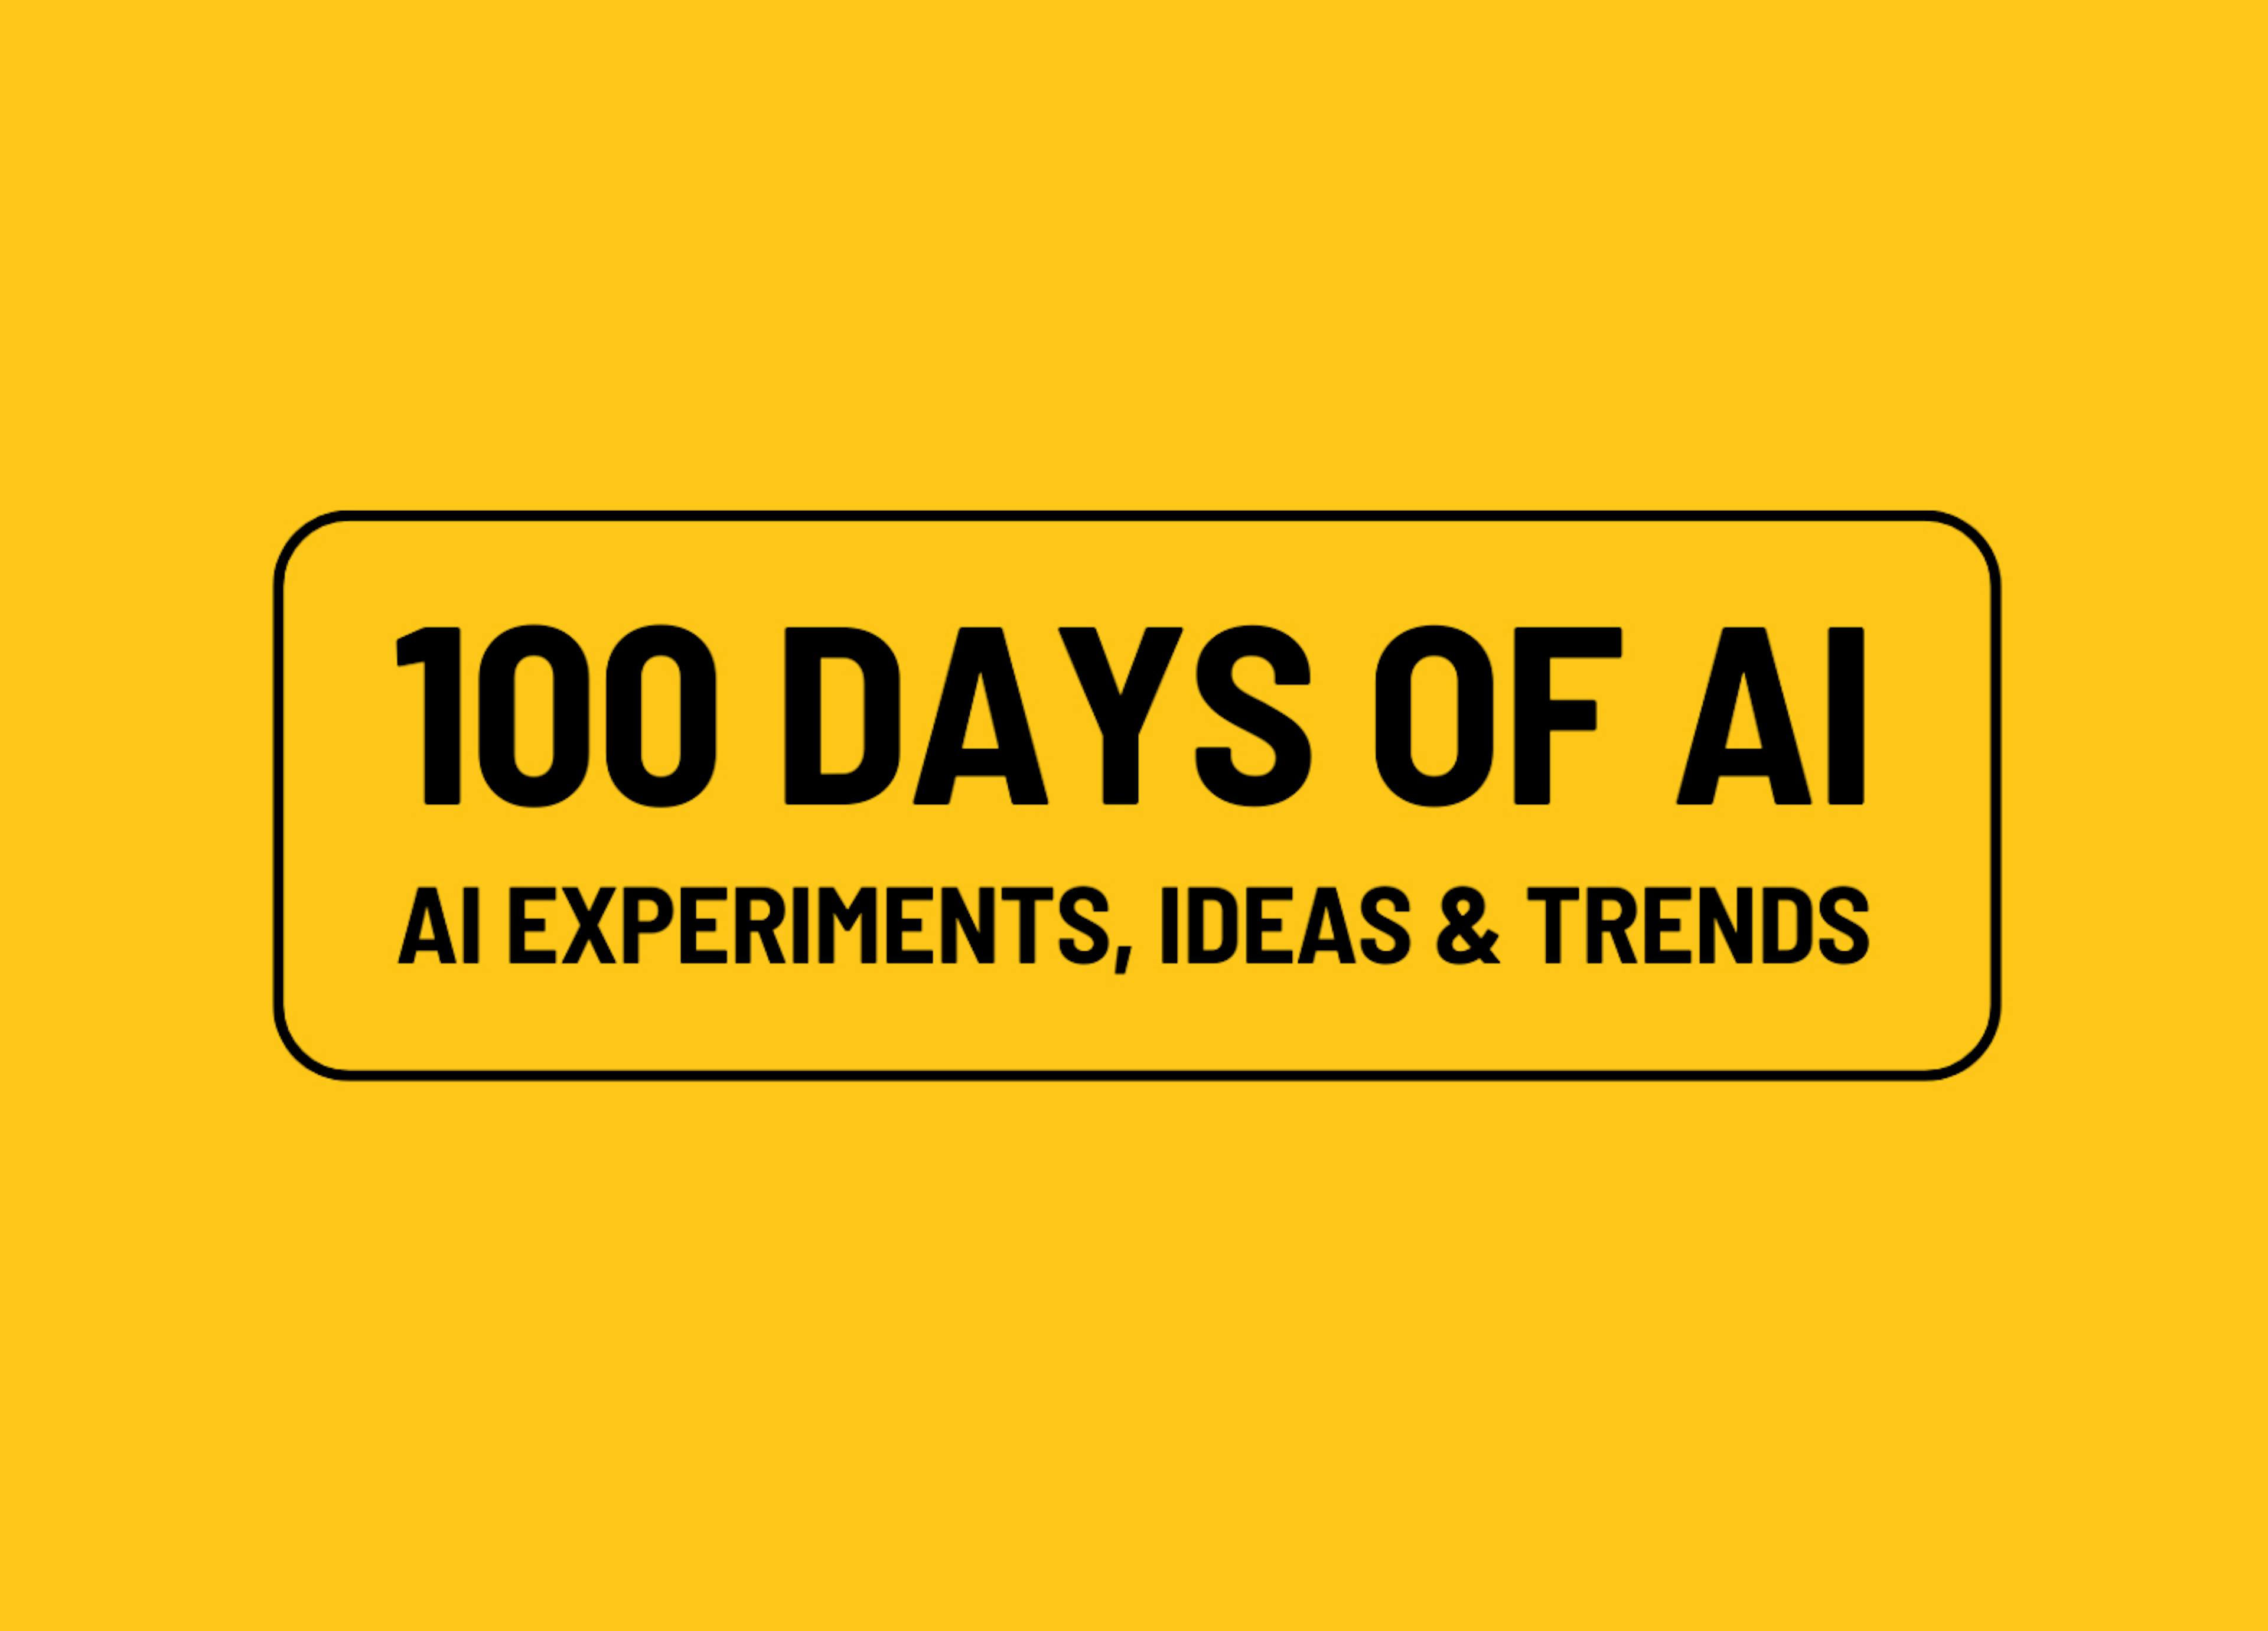 featured image - 100 días de IA, día 19: El chatbot de IA de Klarna y el auge de la IA generativa en las empresas emergentes